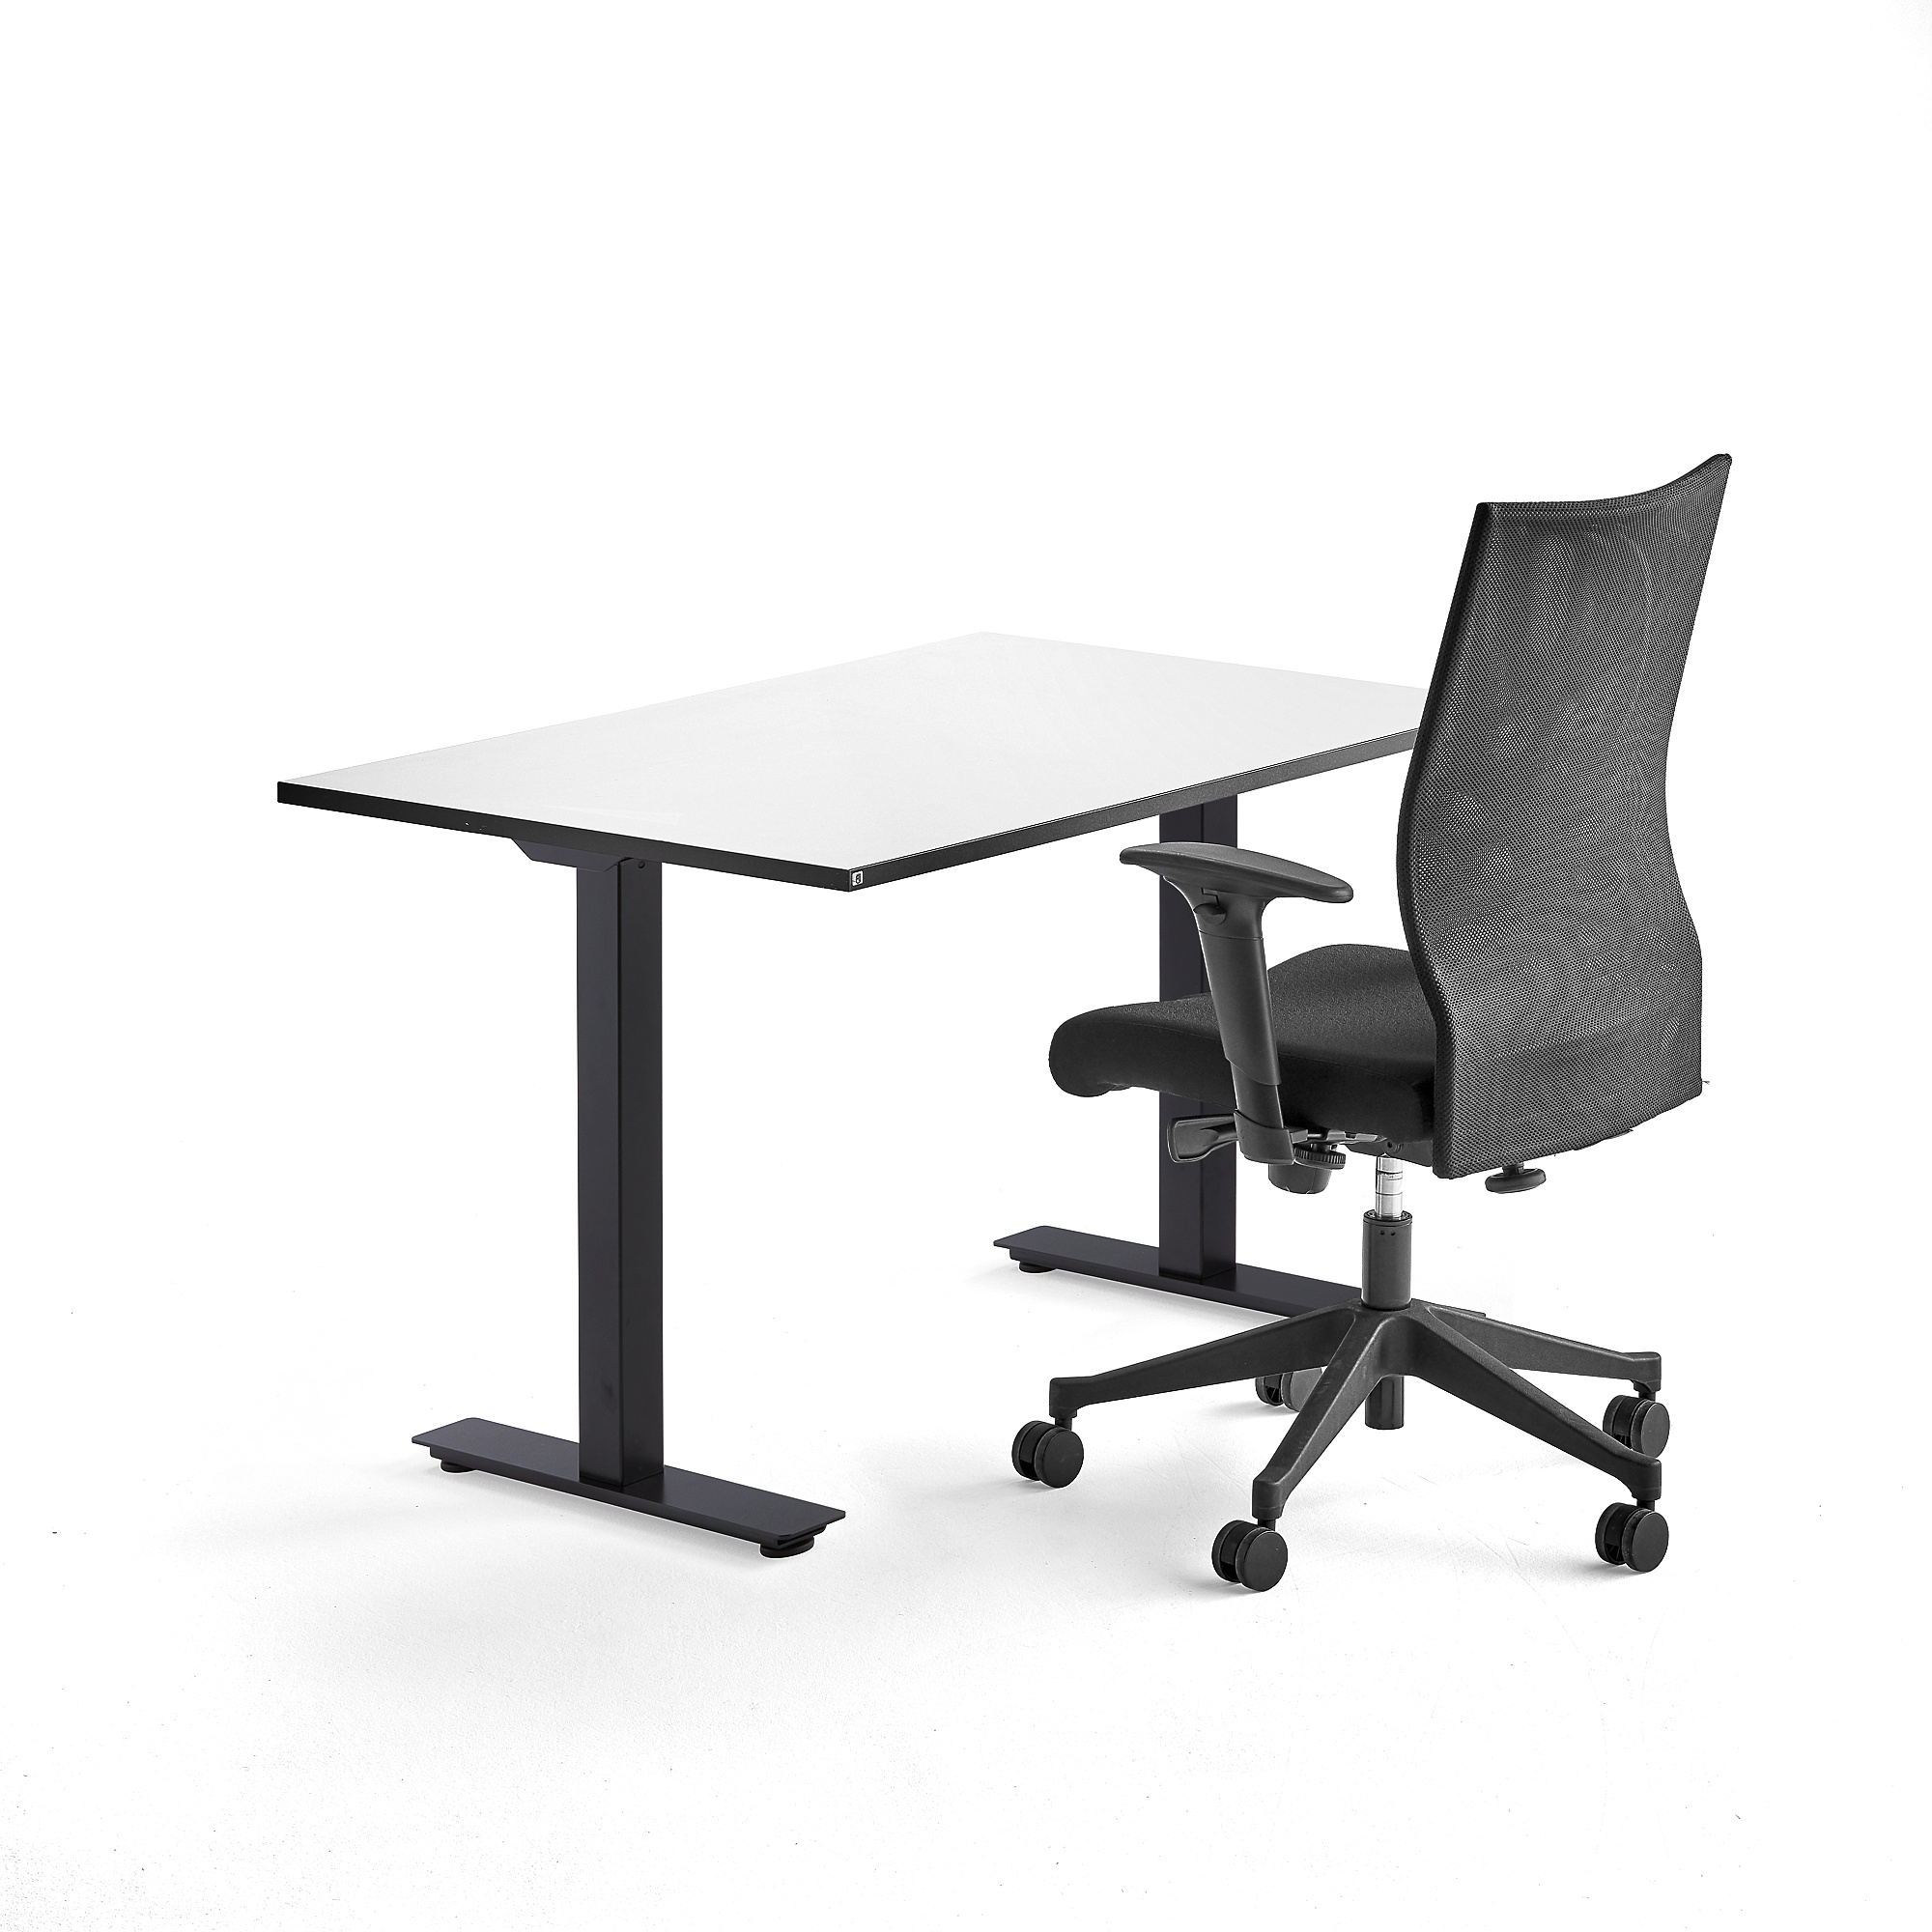 Kancelárska zostava: Stôl Nomad + kancelárska stolička Milton